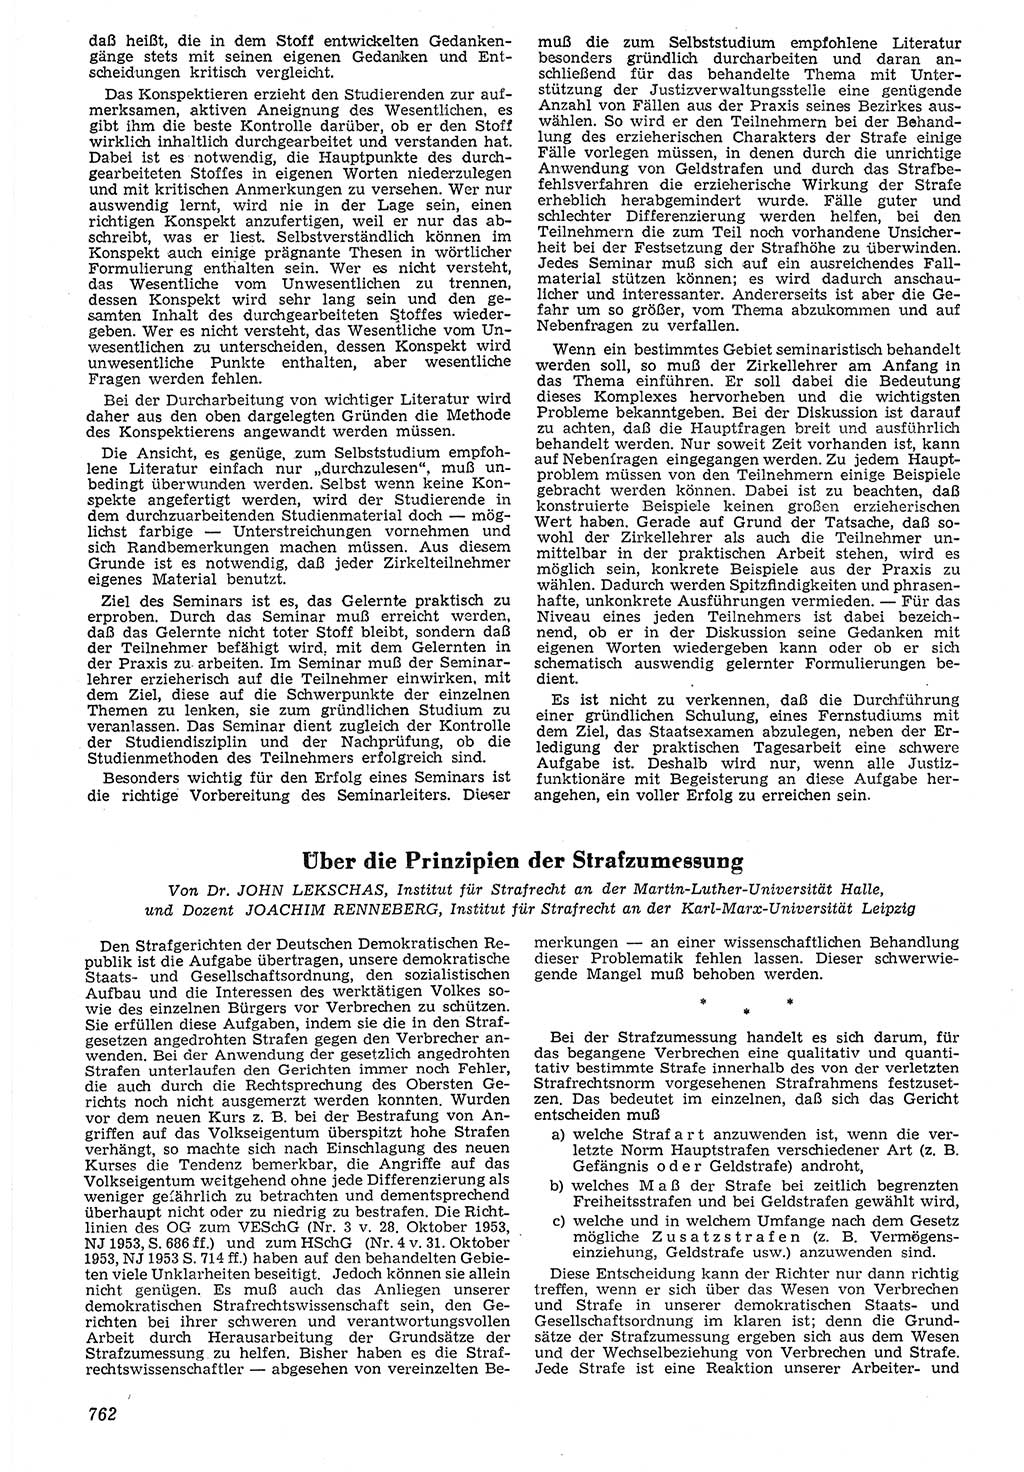 Neue Justiz (NJ), Zeitschrift für Recht und Rechtswissenschaft [Deutsche Demokratische Republik (DDR)], 7. Jahrgang 1953, Seite 762 (NJ DDR 1953, S. 762)